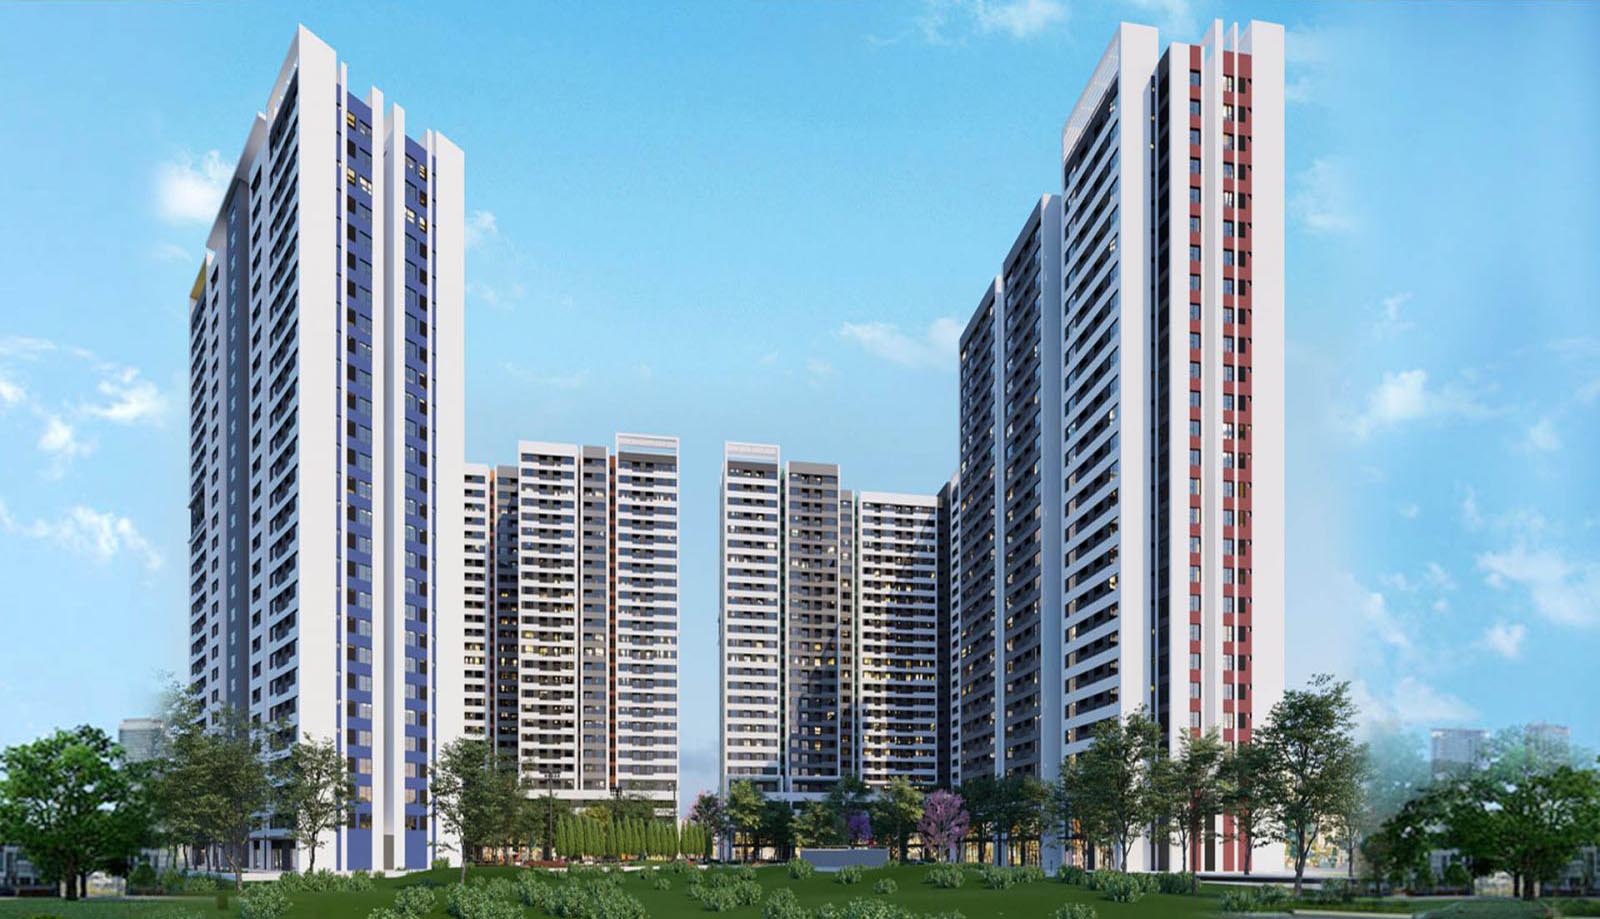 Phối cảnh căn hộ aio city binh tân cao 28 tầng với 2060 căn hộ và 69 căn shophoues